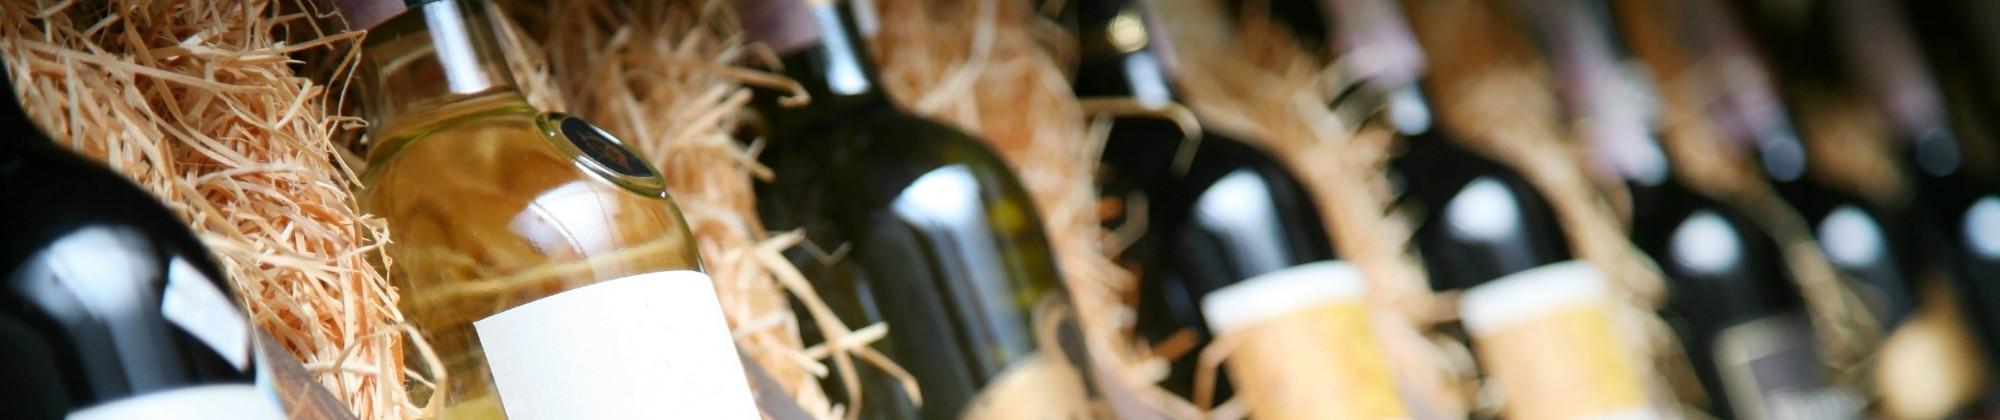 Vini Salentini: i vini più apprezzati del Salento